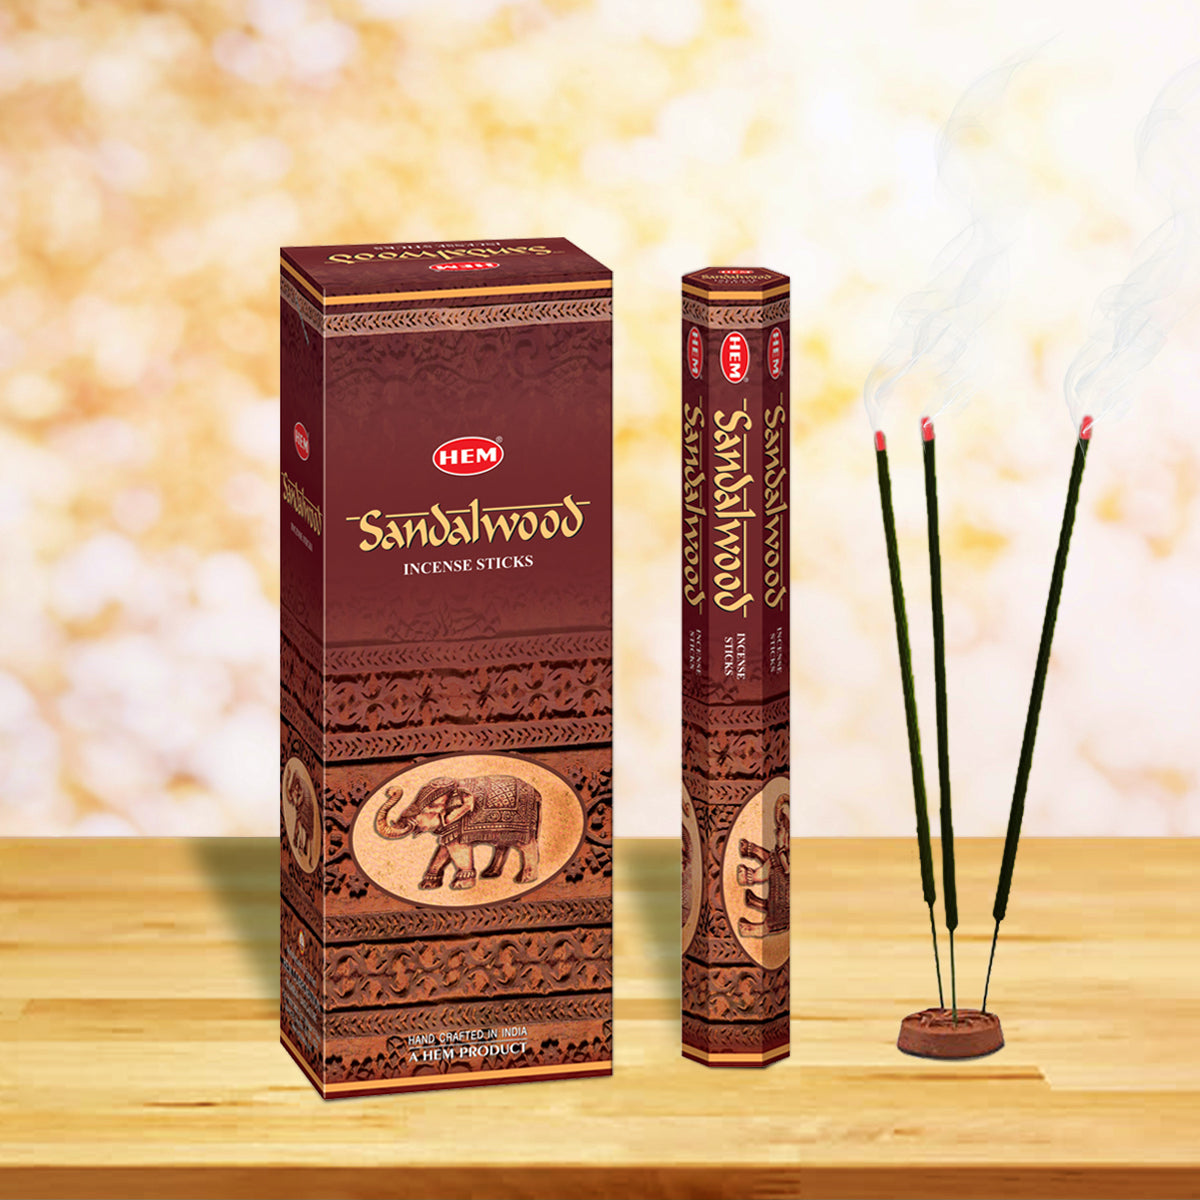 HEM Sandalwood Incense Sticks (Pack of 120 Sticks)